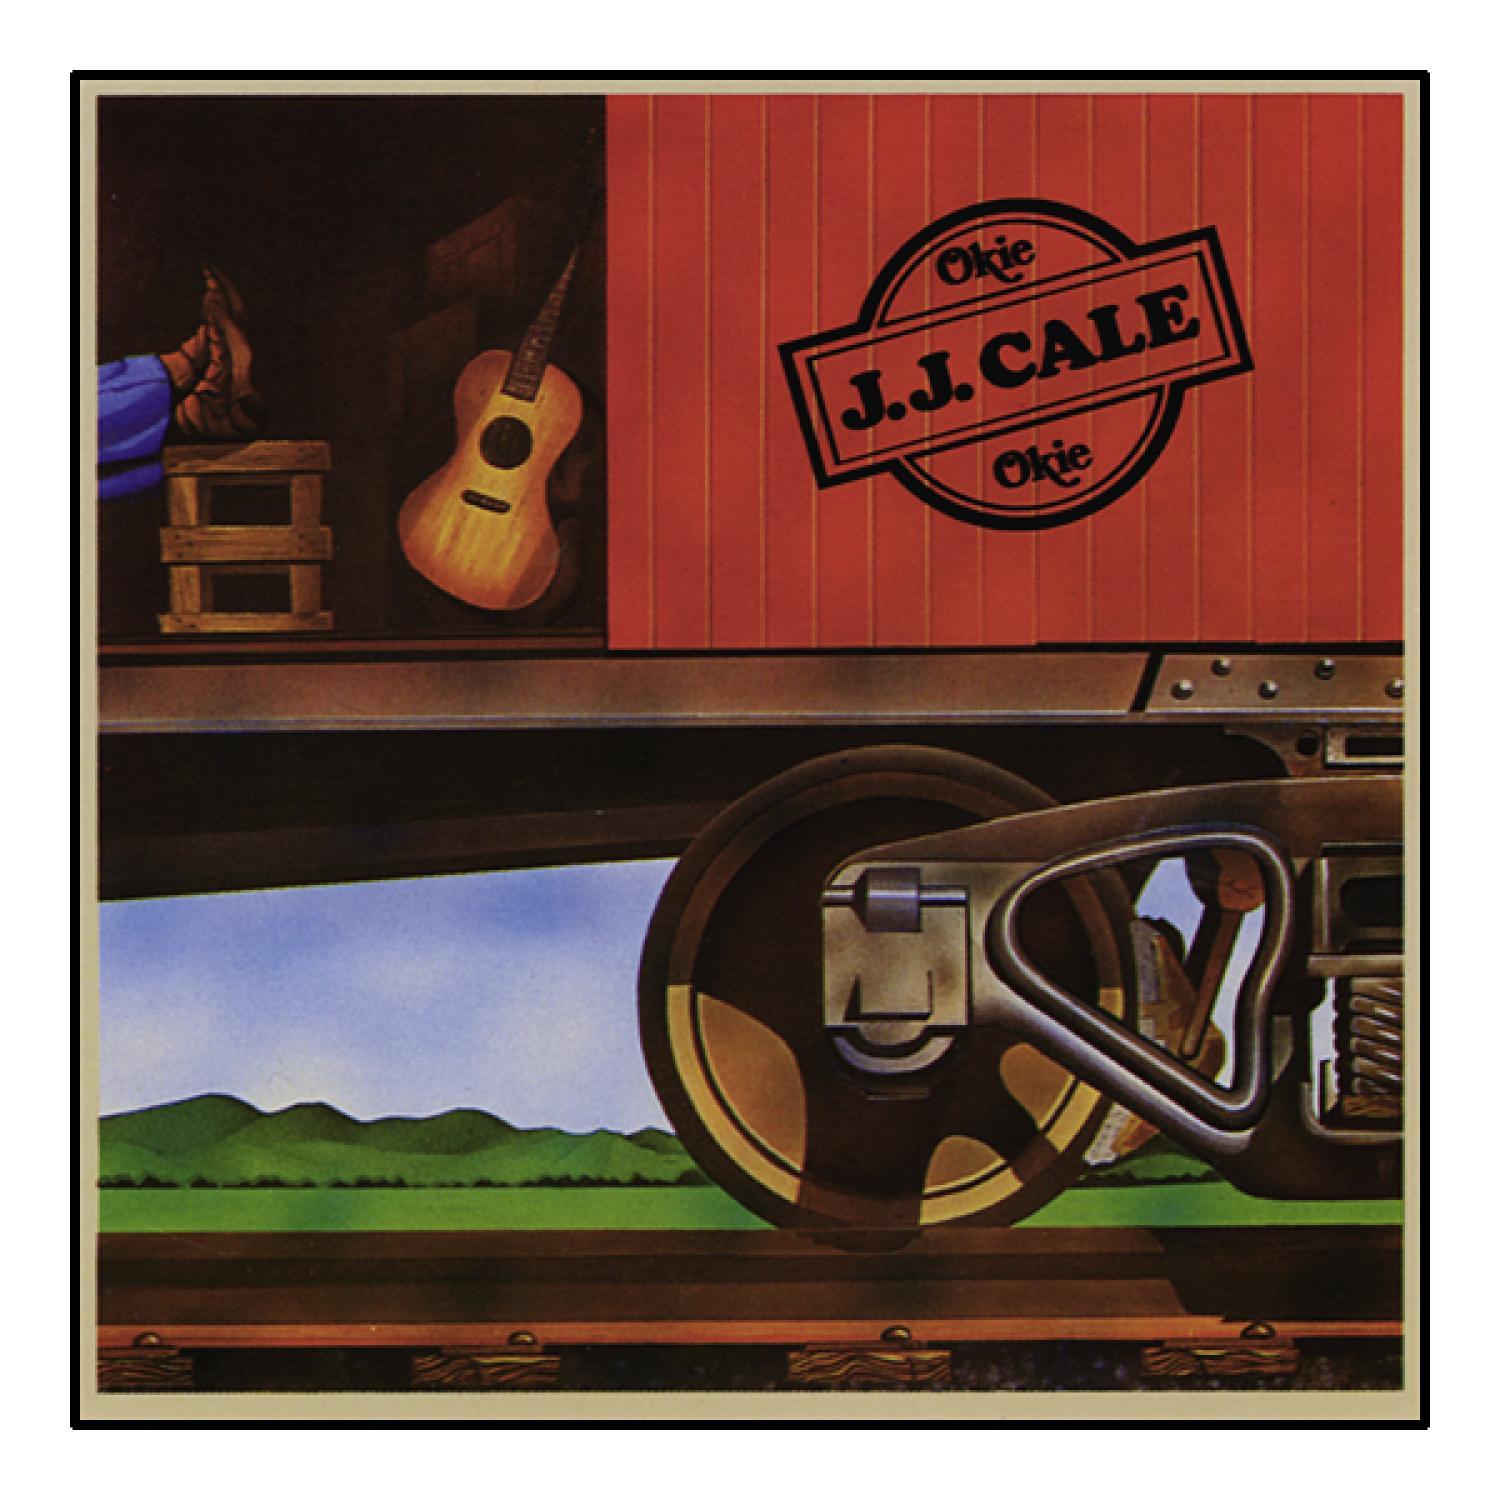 (Vinyl) - Cale J.J. - Okie